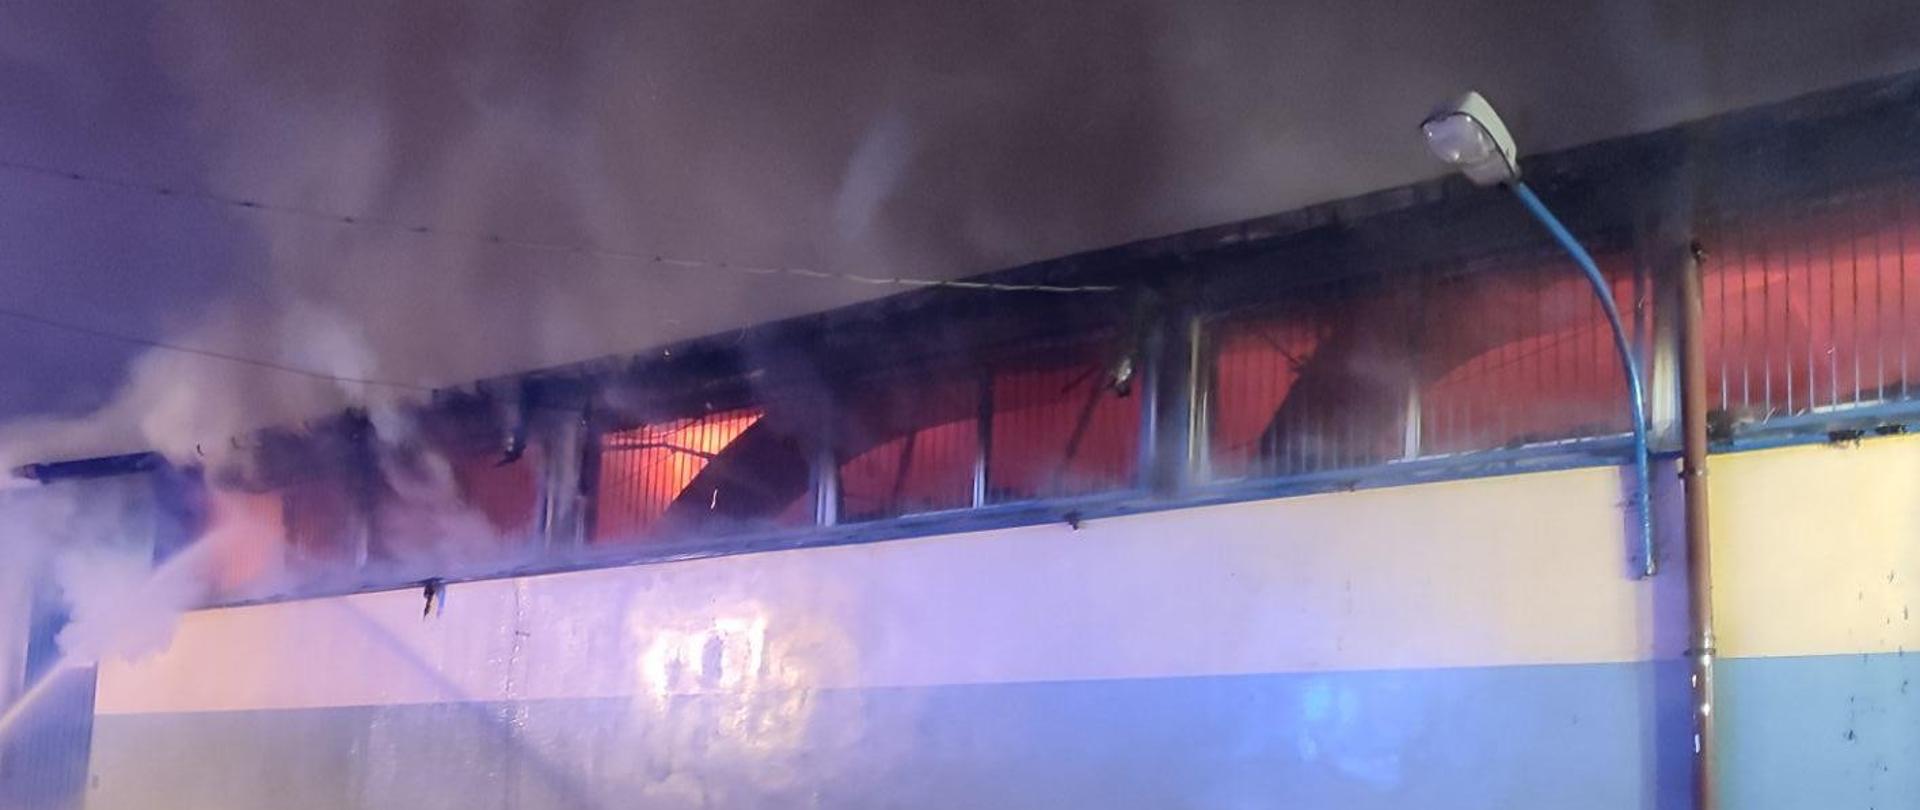 Ściana budynku, przez okna umieszczone w górnej części ściany widać ogień w środku budynku. Nad budynkiem gęsty dym. Na ziemi przed budynkiem leżą węże strażackie